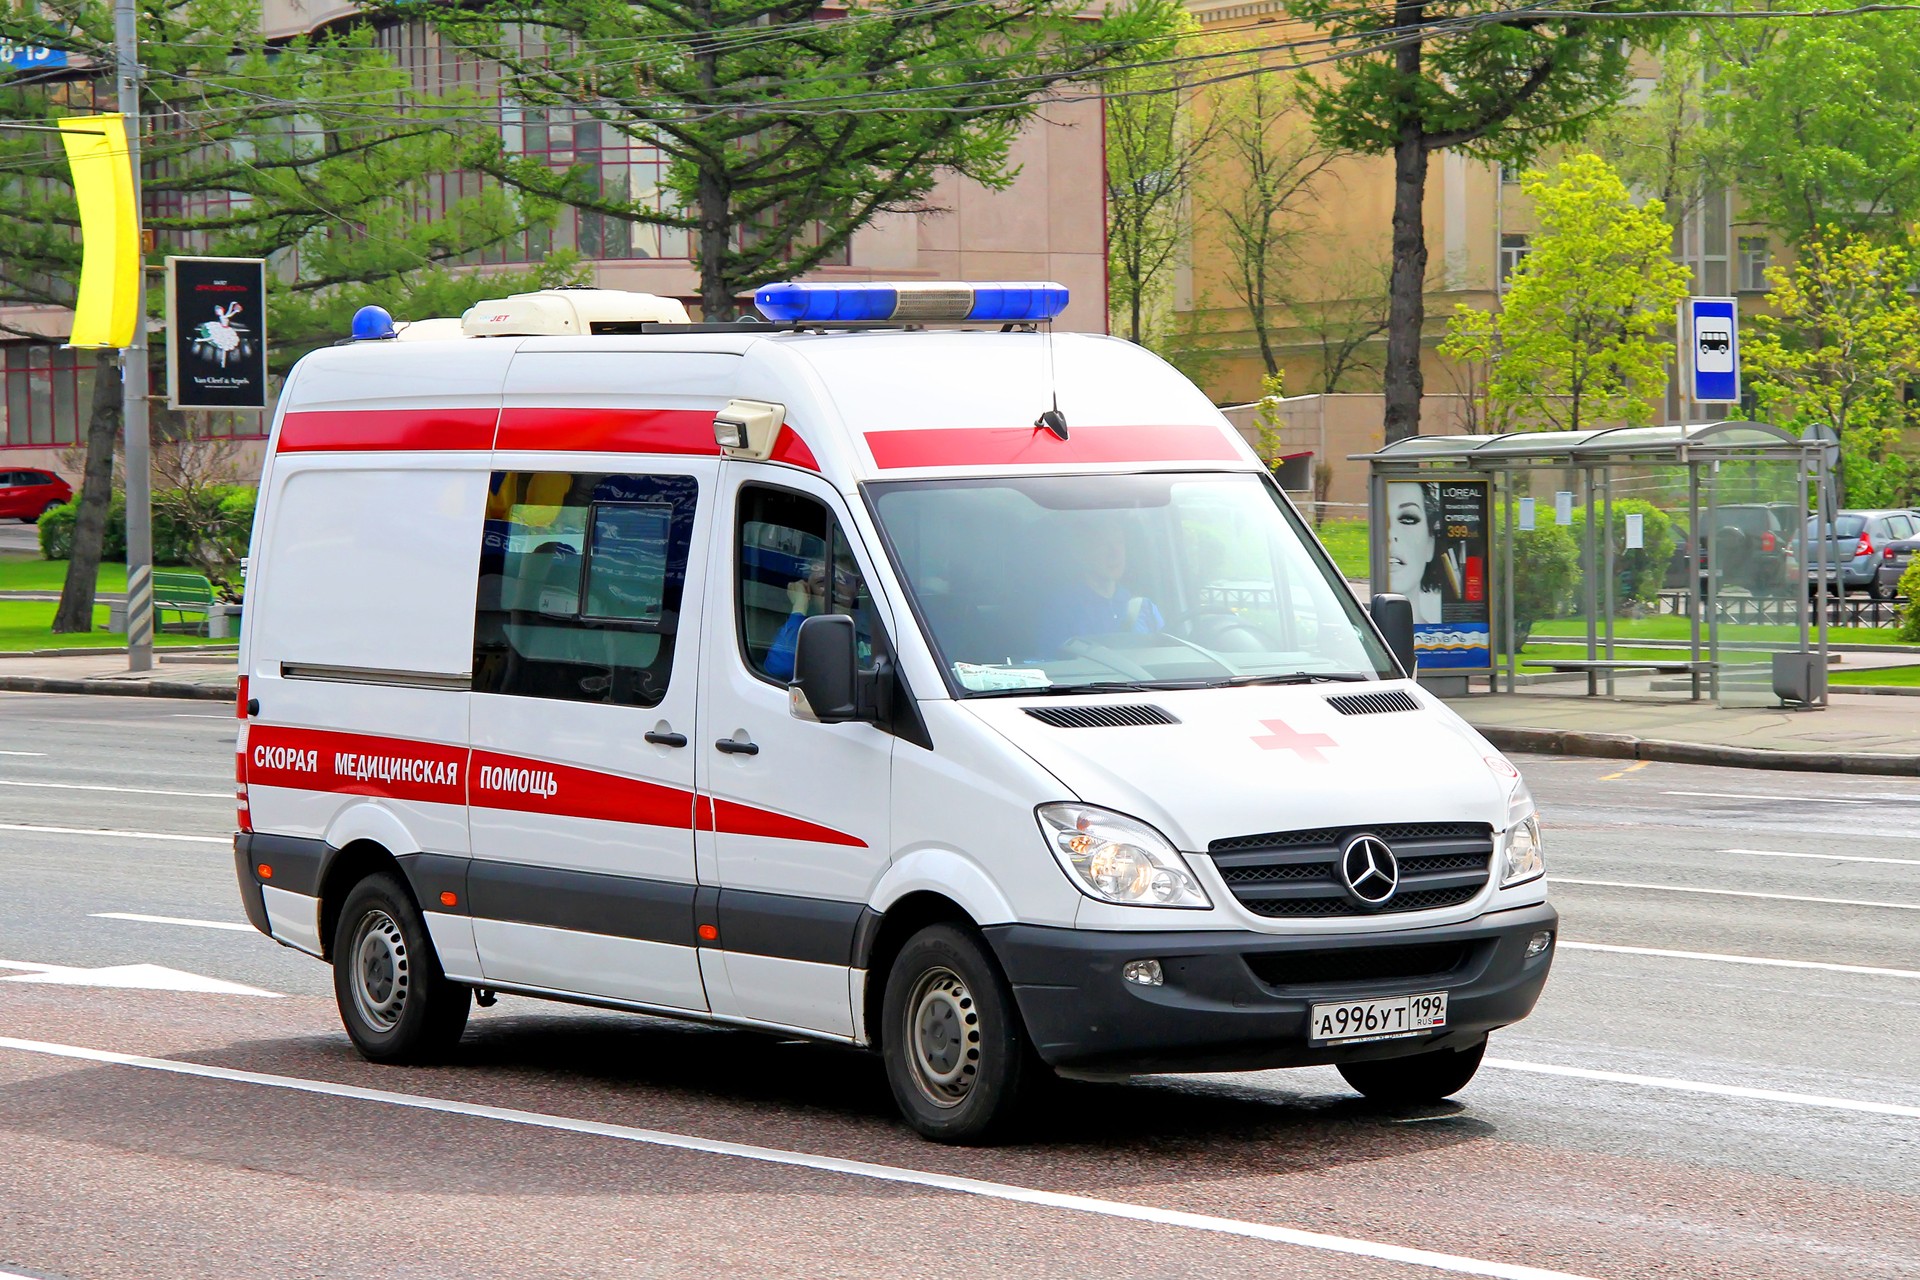 В Санкт-Петербурге пьяный пациент подкинул гранату в машину скорой помощи 